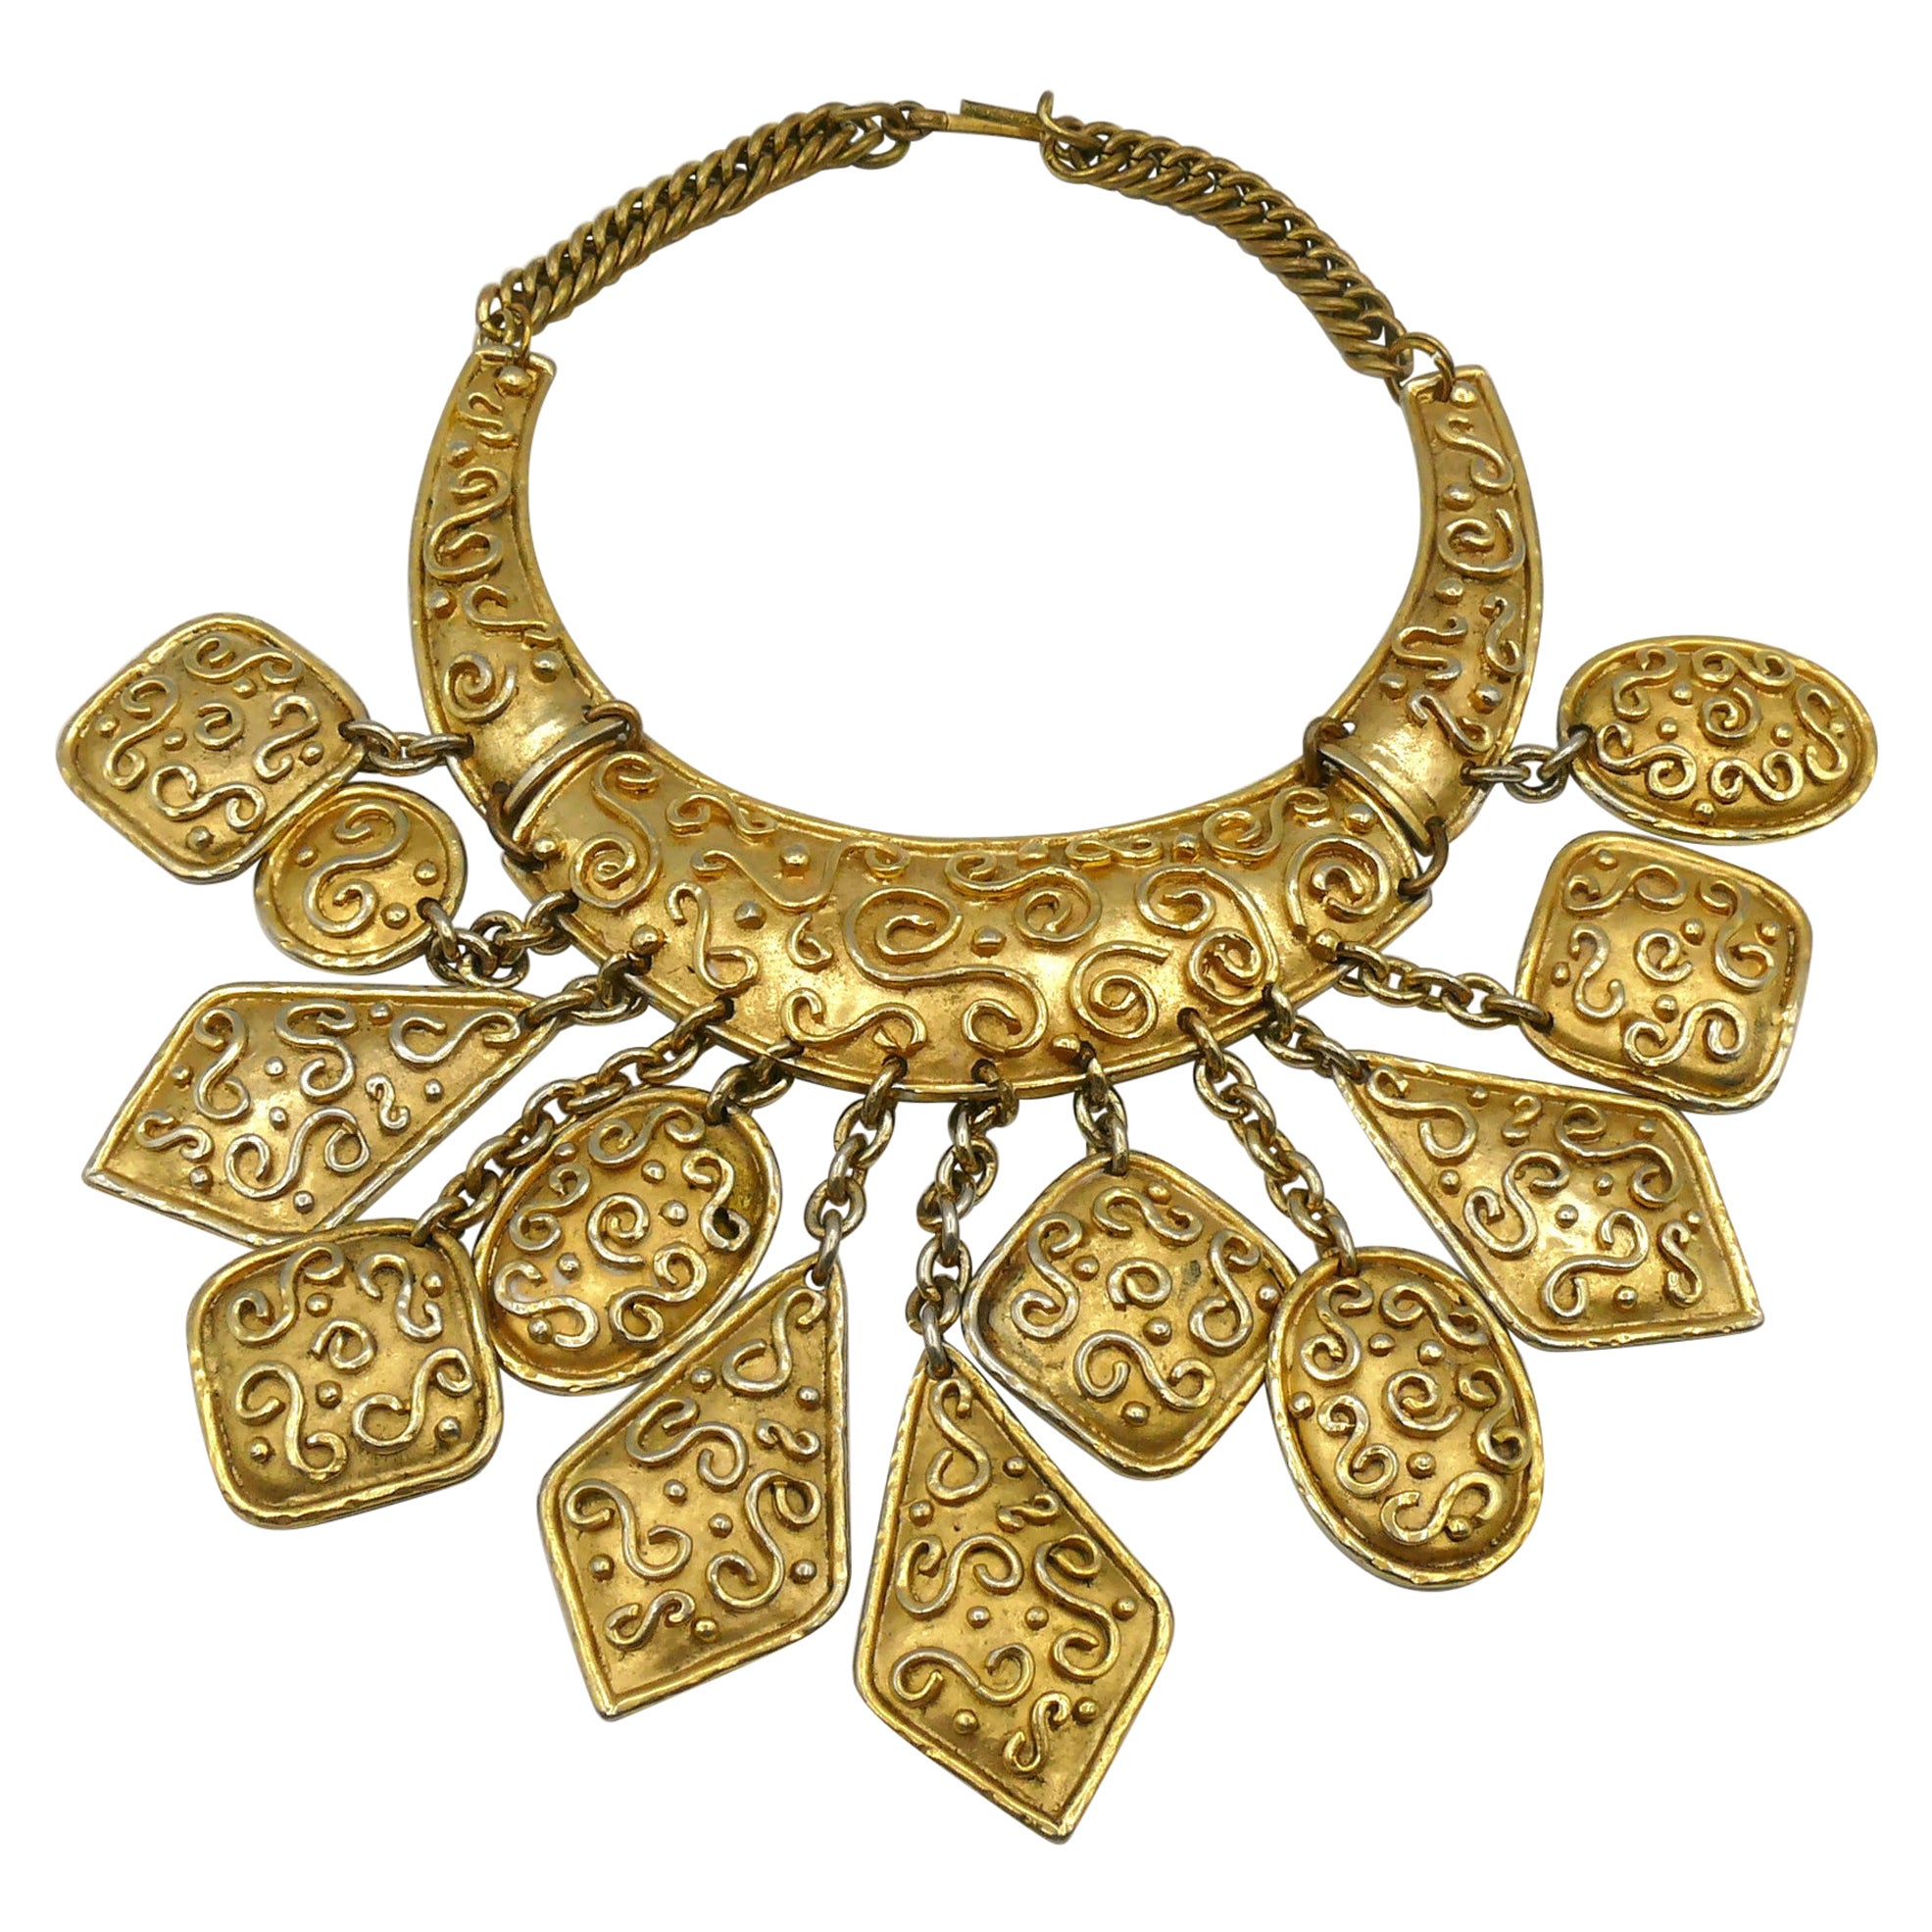 Gold Bib Necklaces - 36 For Sale on 1stDibs | vintage bib necklace 